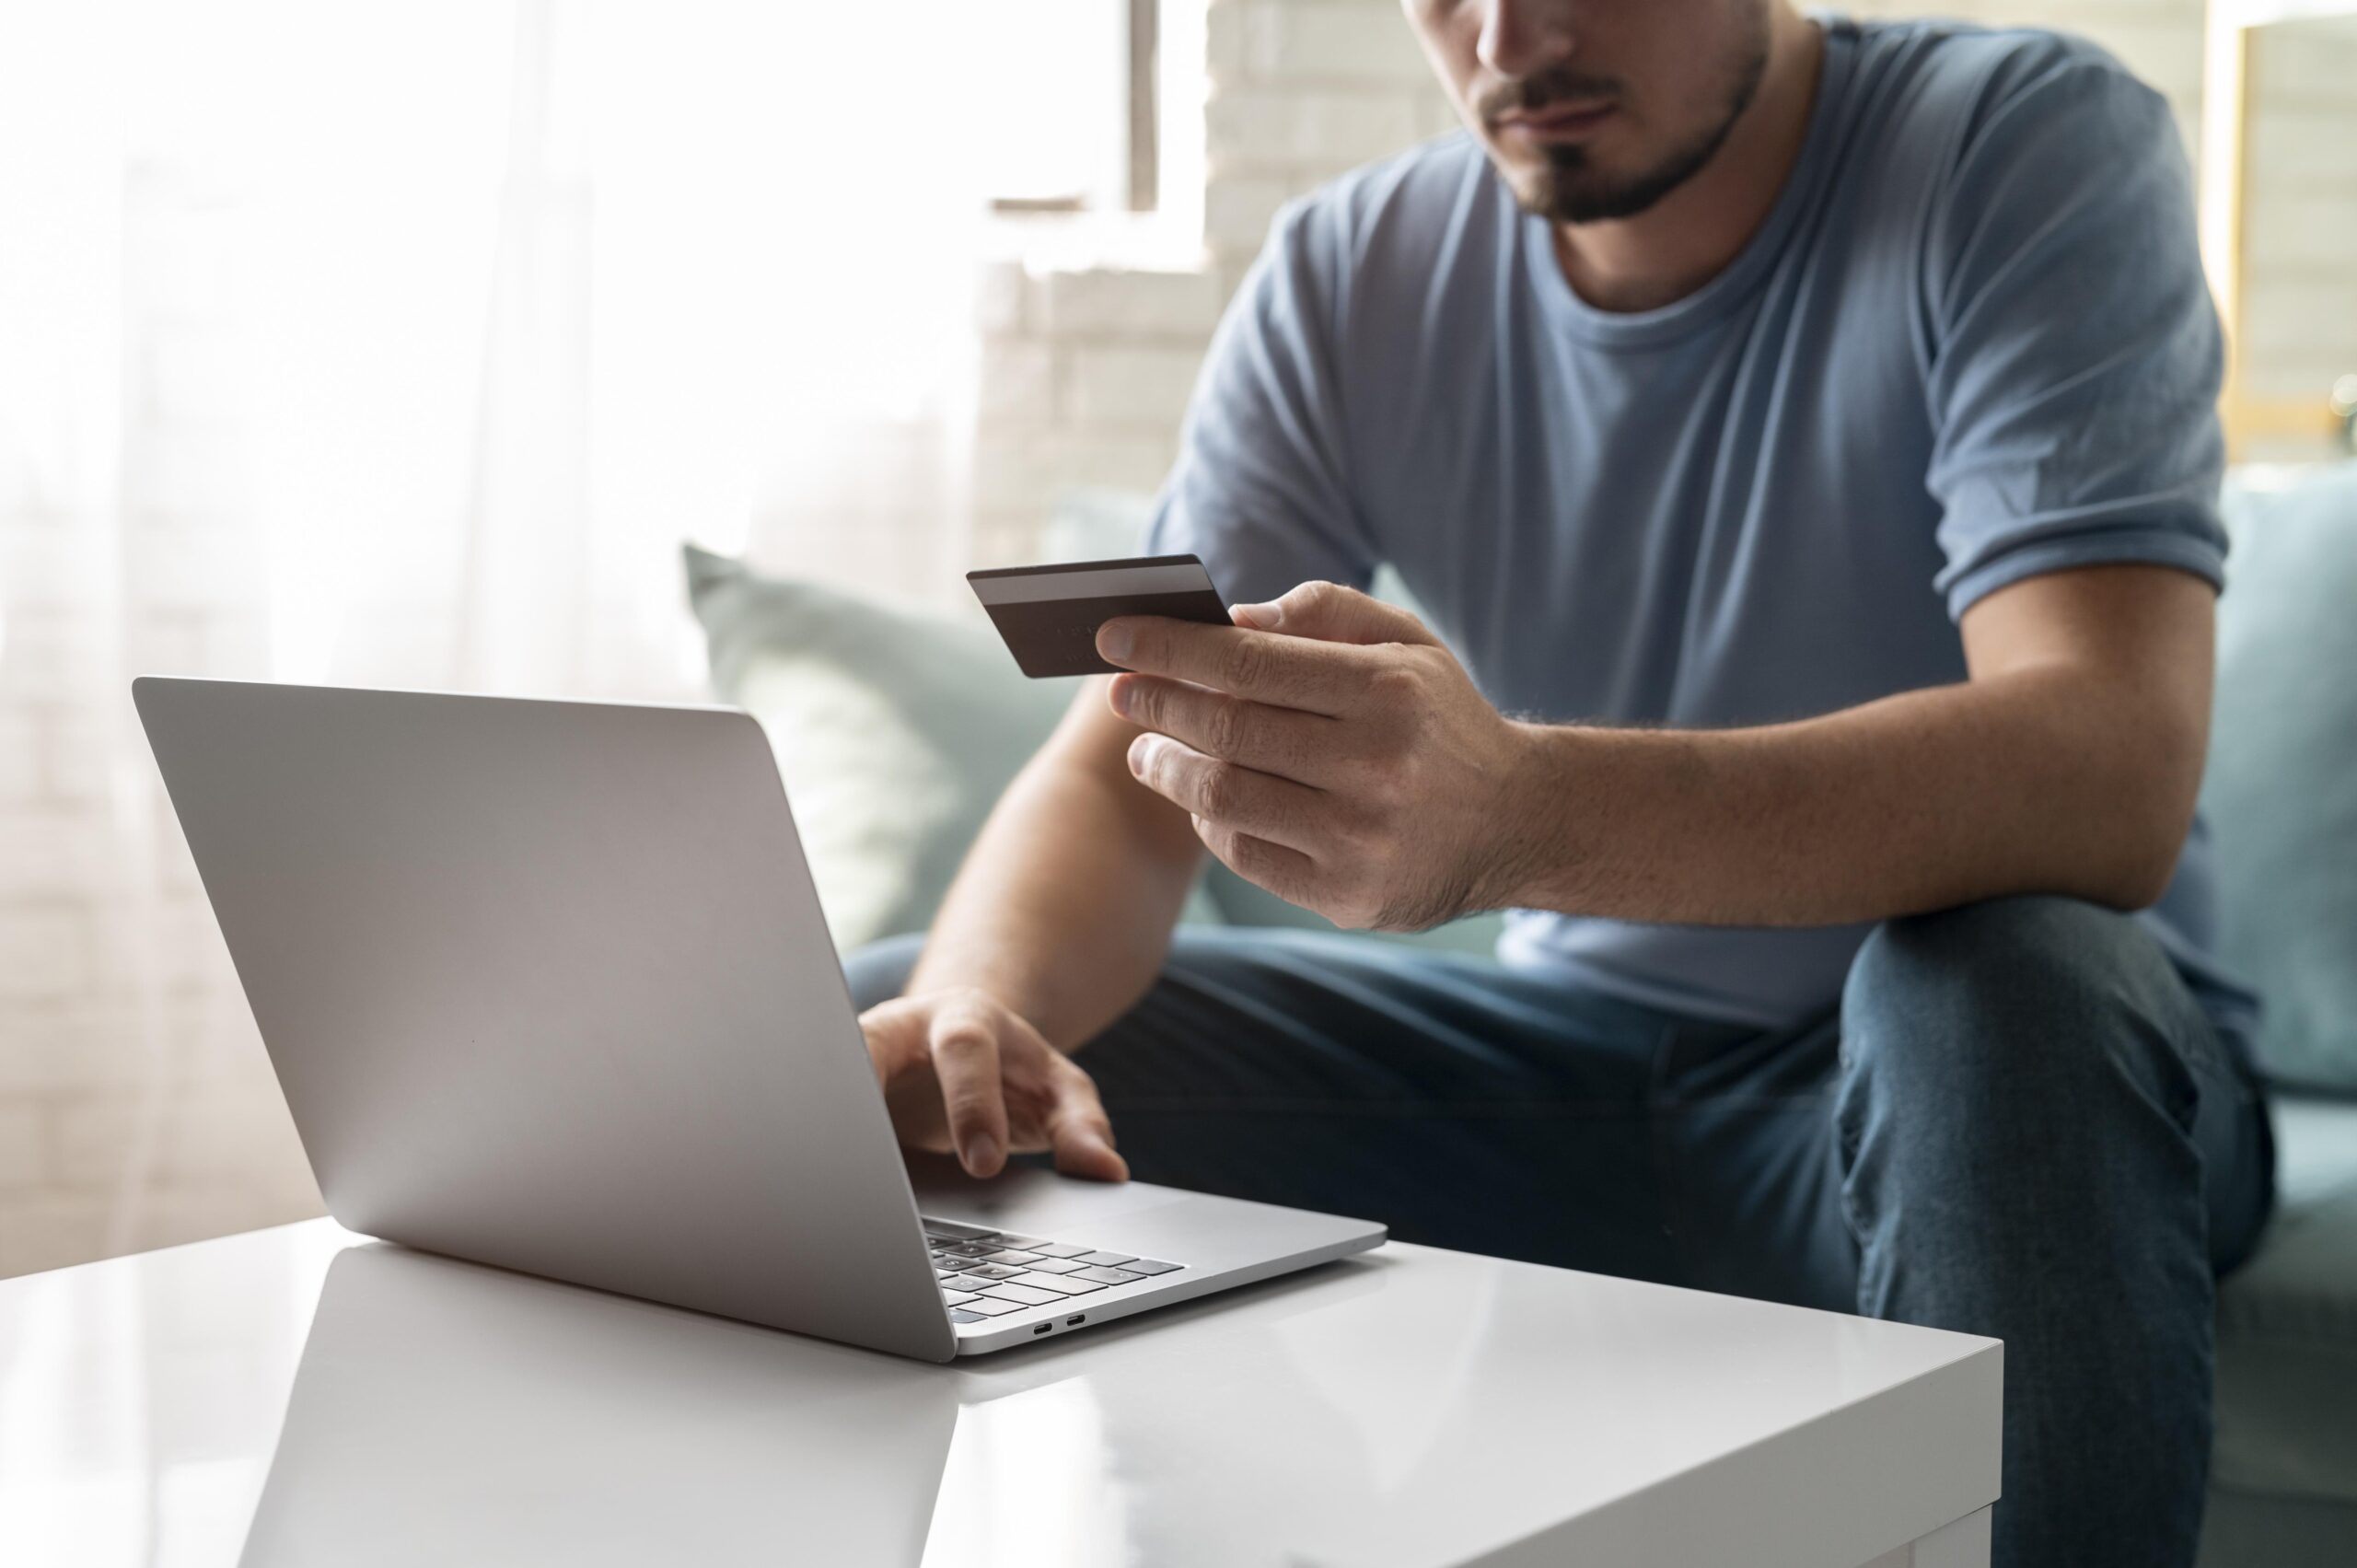 5 pasos para comprar en línea de forma segura y proteger tu información personal